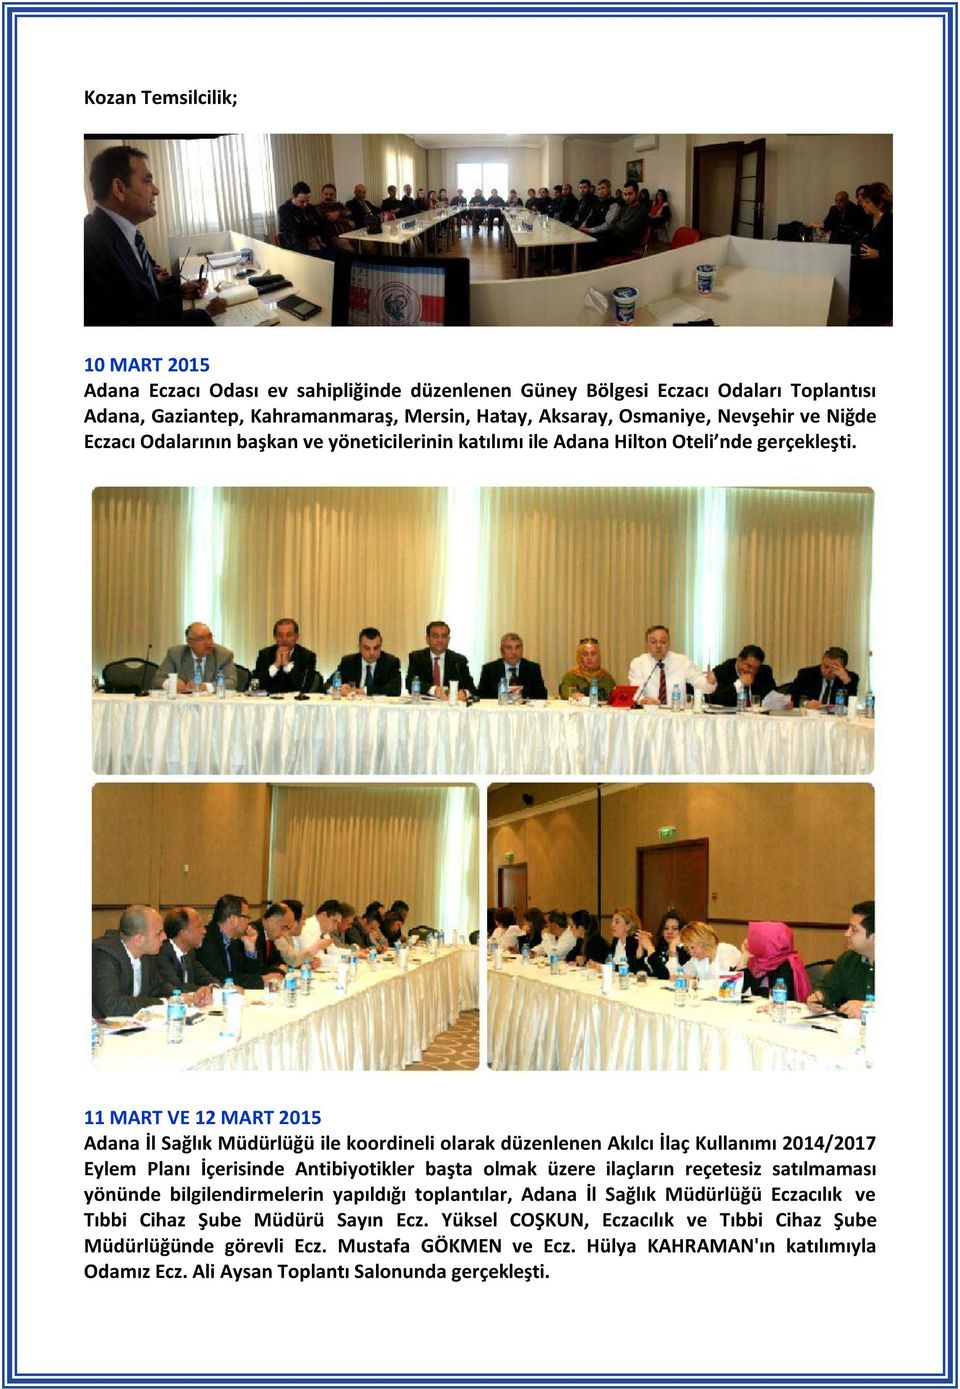 11 MART VE 12 MART 2015 Adana İl Sağlık Müdürlüğü ile koordineli olarak düzenlenen Akılcı İlaç Kullanımı 2014/2017 Eylem Planı İçerisinde Antibiyotikler başta olmak üzere ilaçların reçetesiz